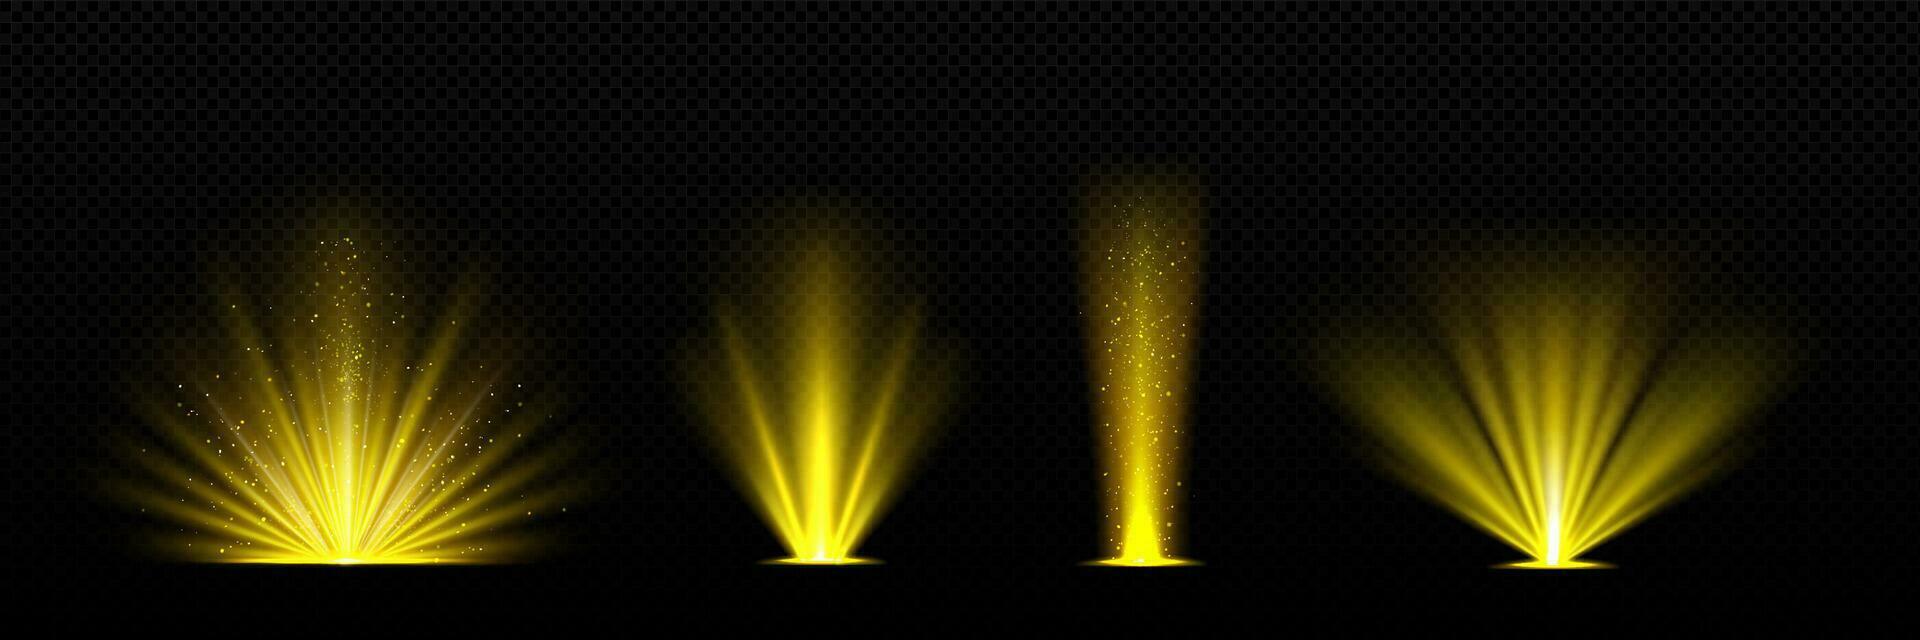 realistisch einstellen von golden Licht scheinen auf schwarz vektor